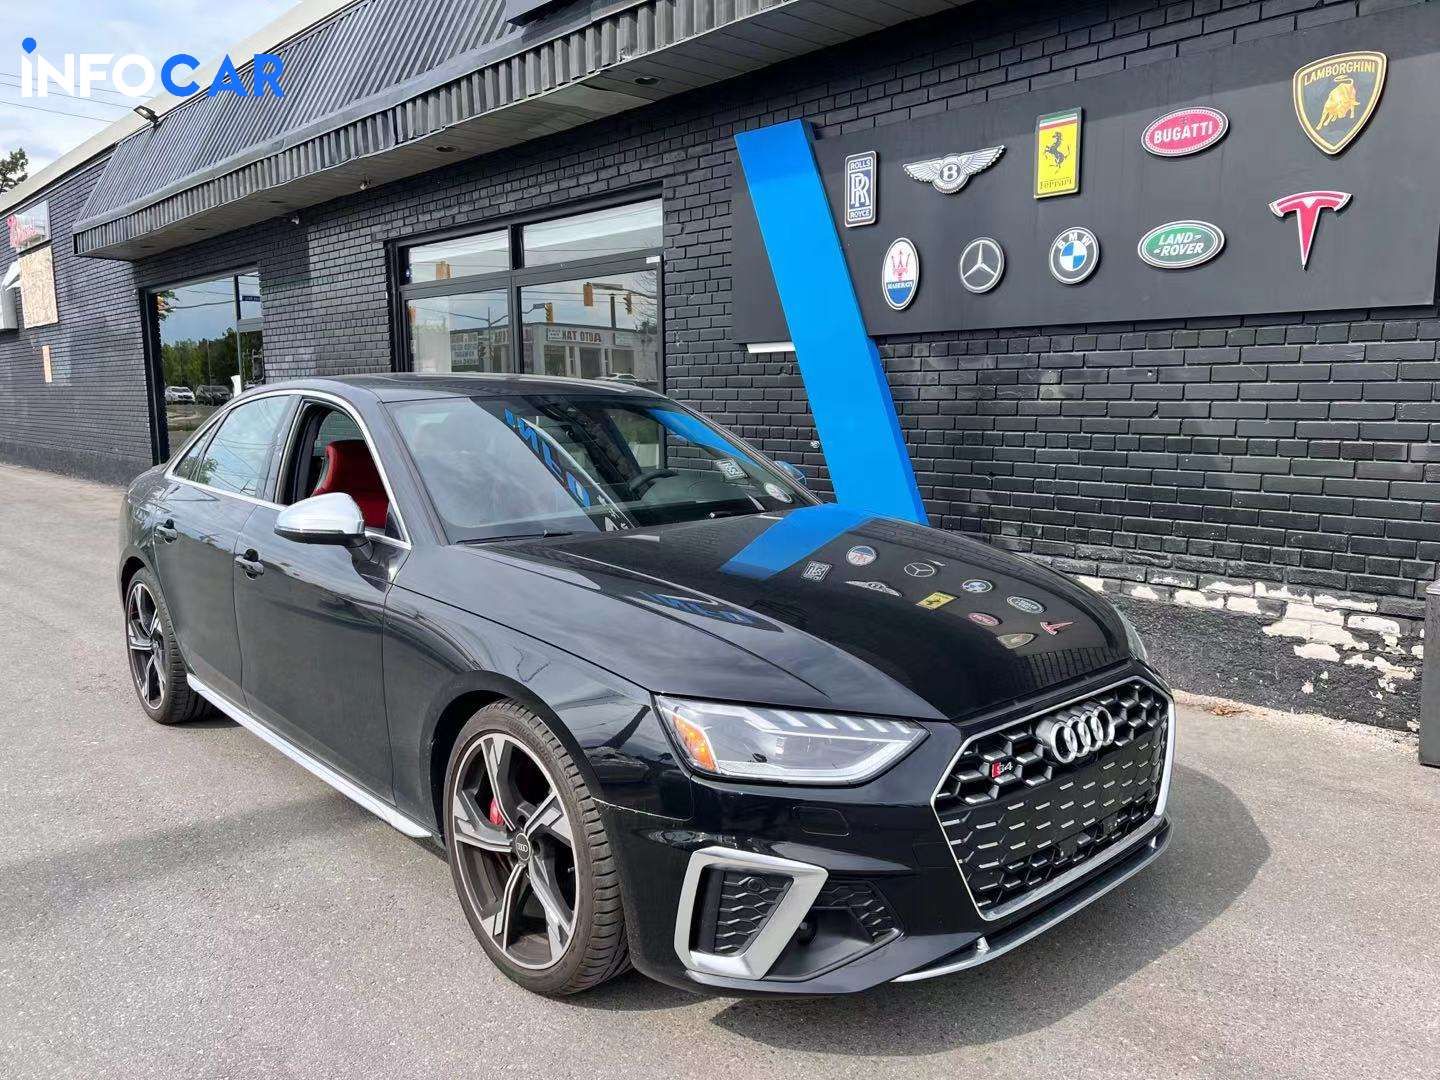 2021 Audi S4 technik - INFOCAR - Toronto Auto Trading Platform